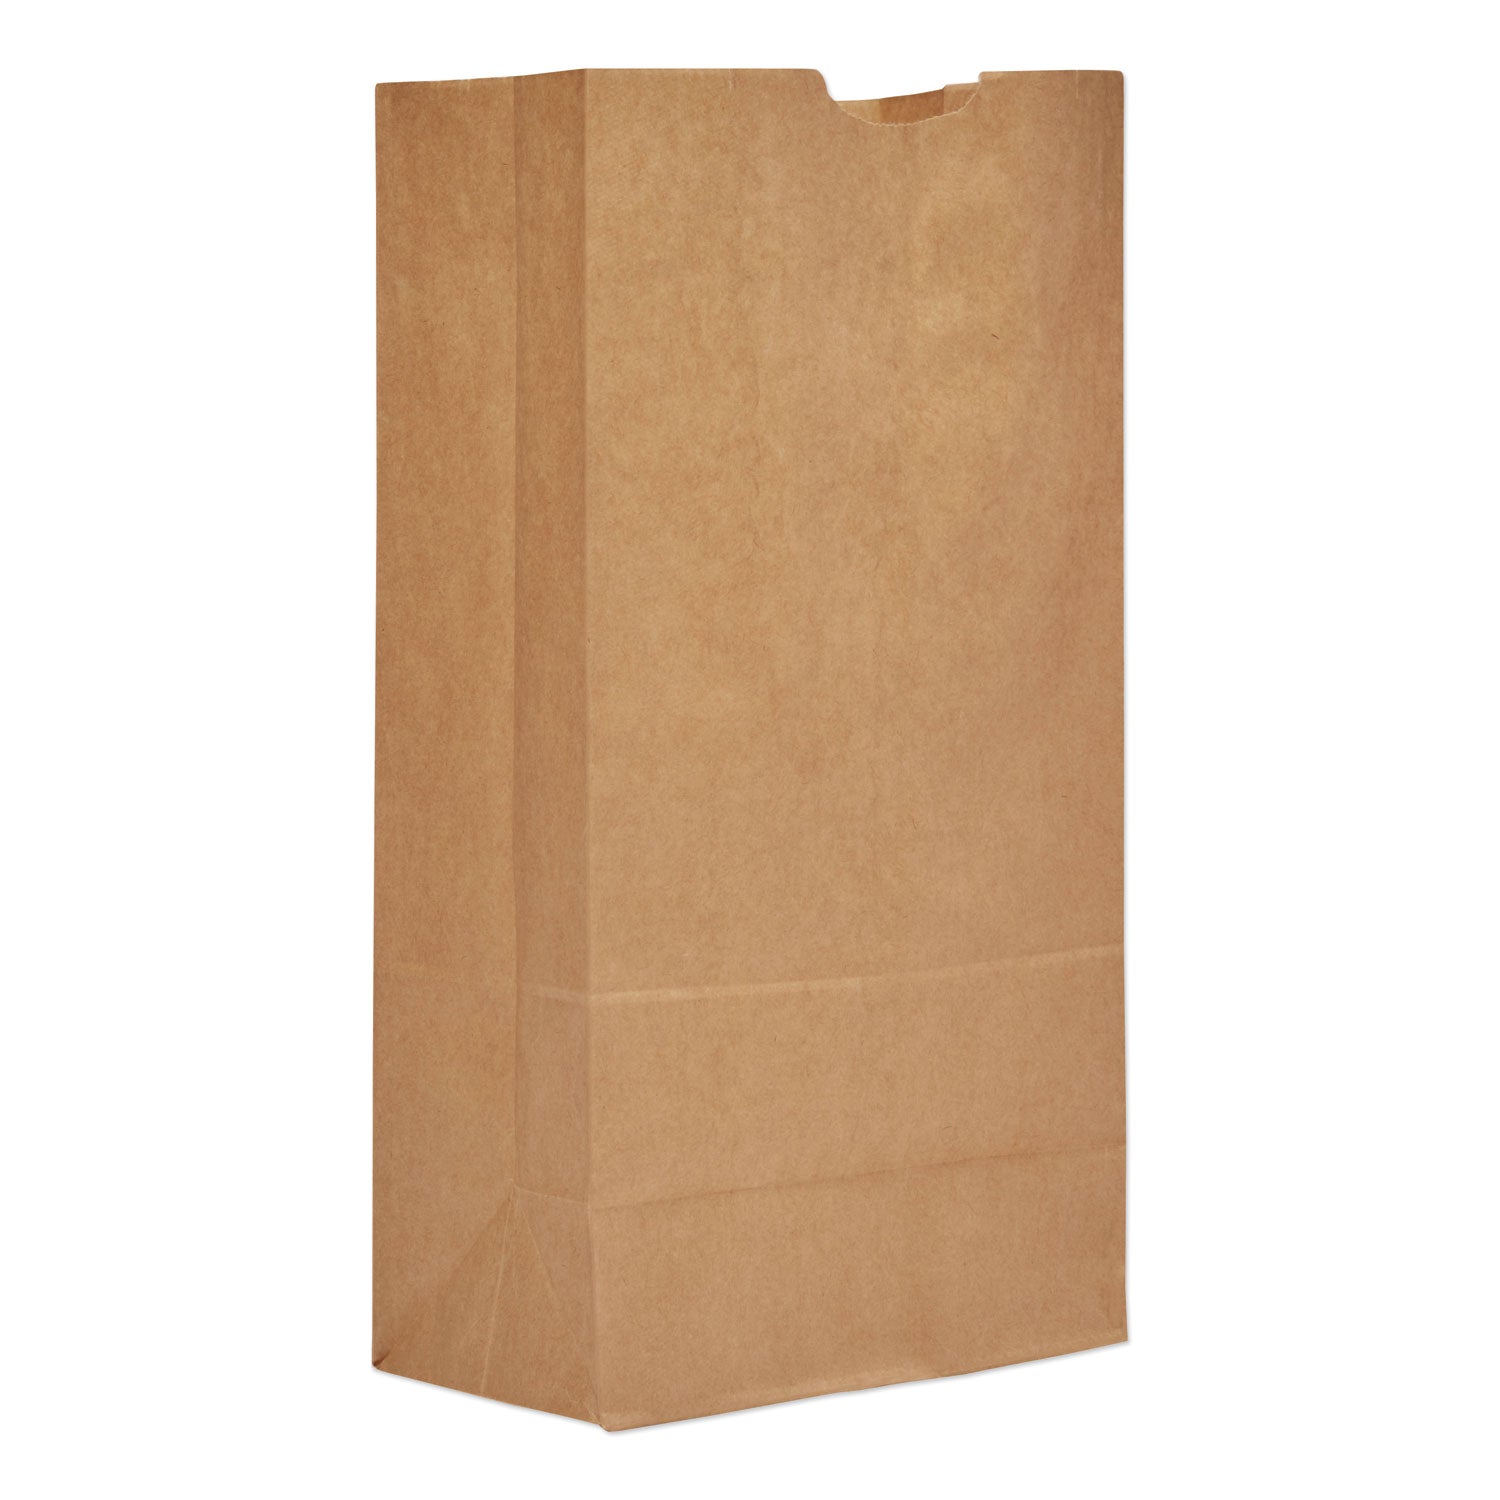 grocery-paper-bags-50-lb-capacity-#20-825-x-594-x-1613-kraft-500-bags_baggh20 - 1